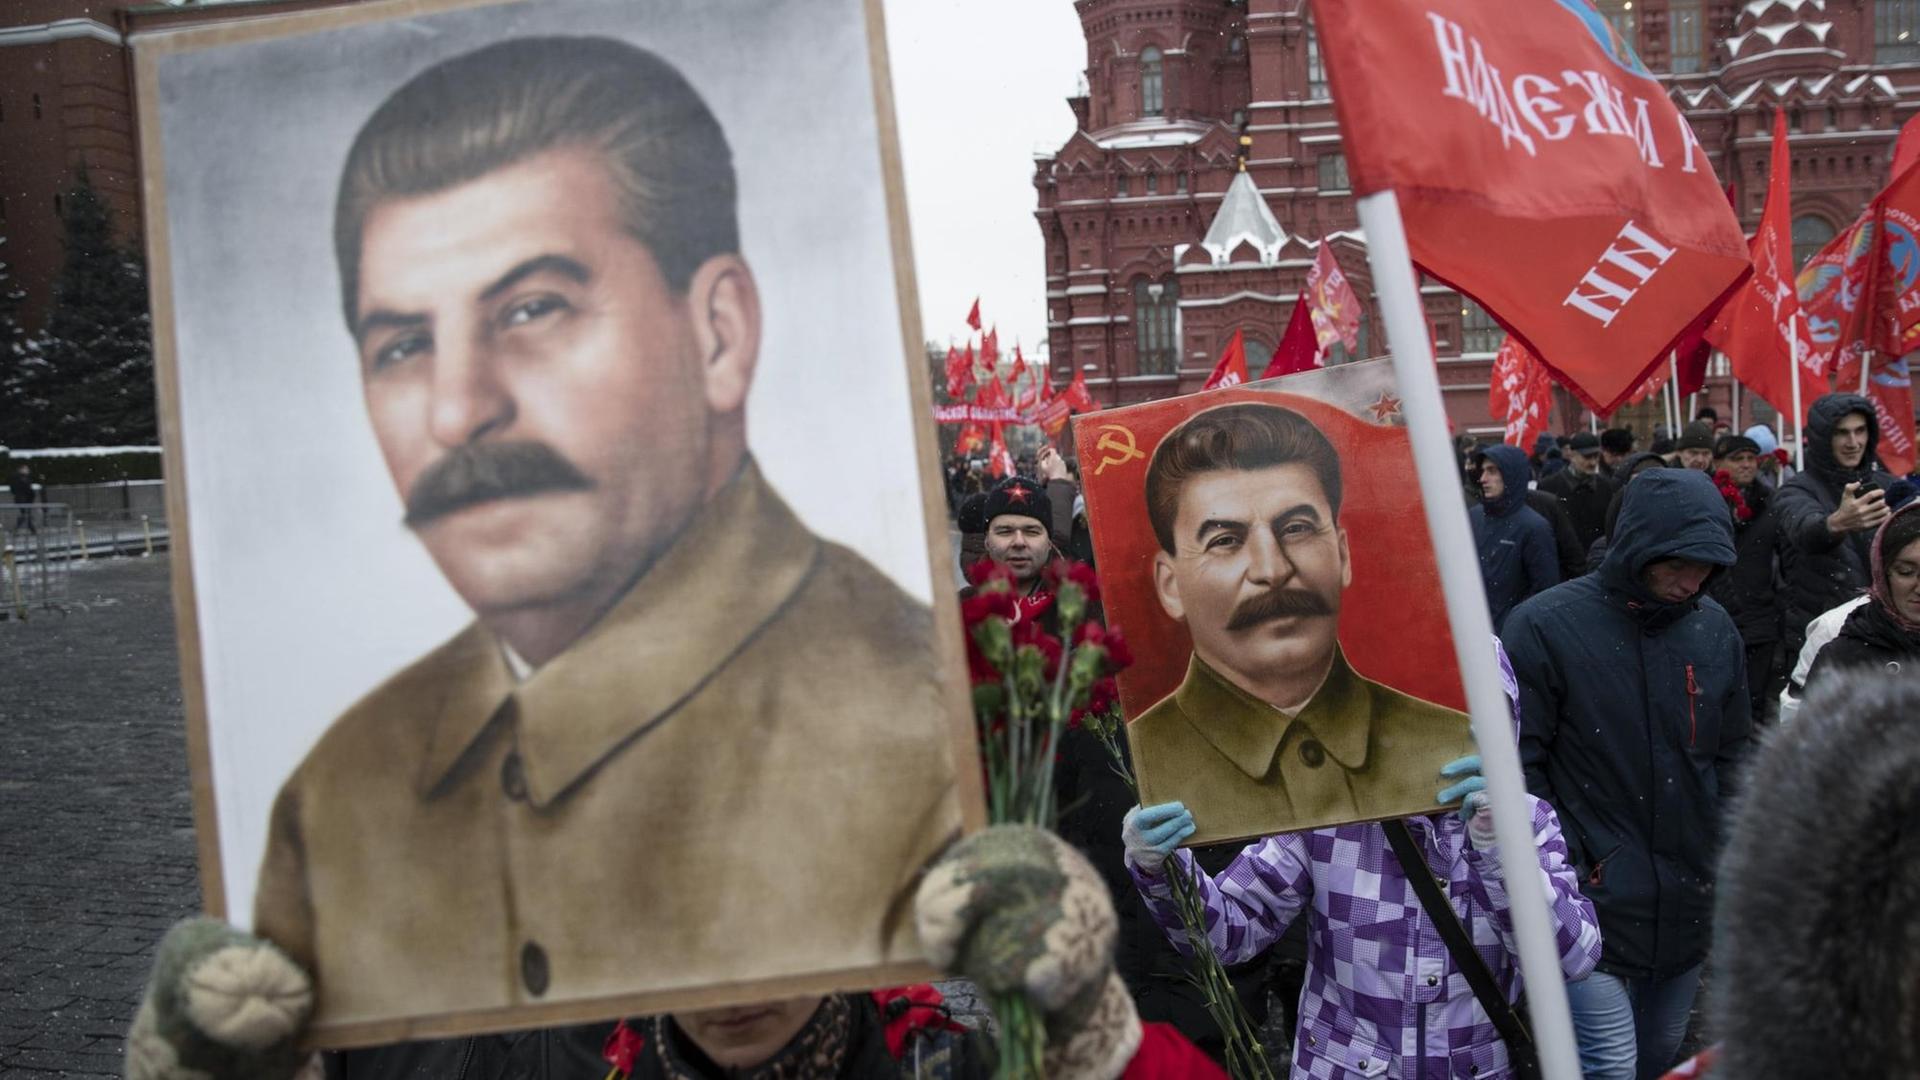 Kommunisten in Moskau mit roten Flaggen und Bildern von Josef Stalin auf dem Weg zum Grab des Diktators an seinem 139. Geburtstag am 21. Dezember 2018 in Moskau.